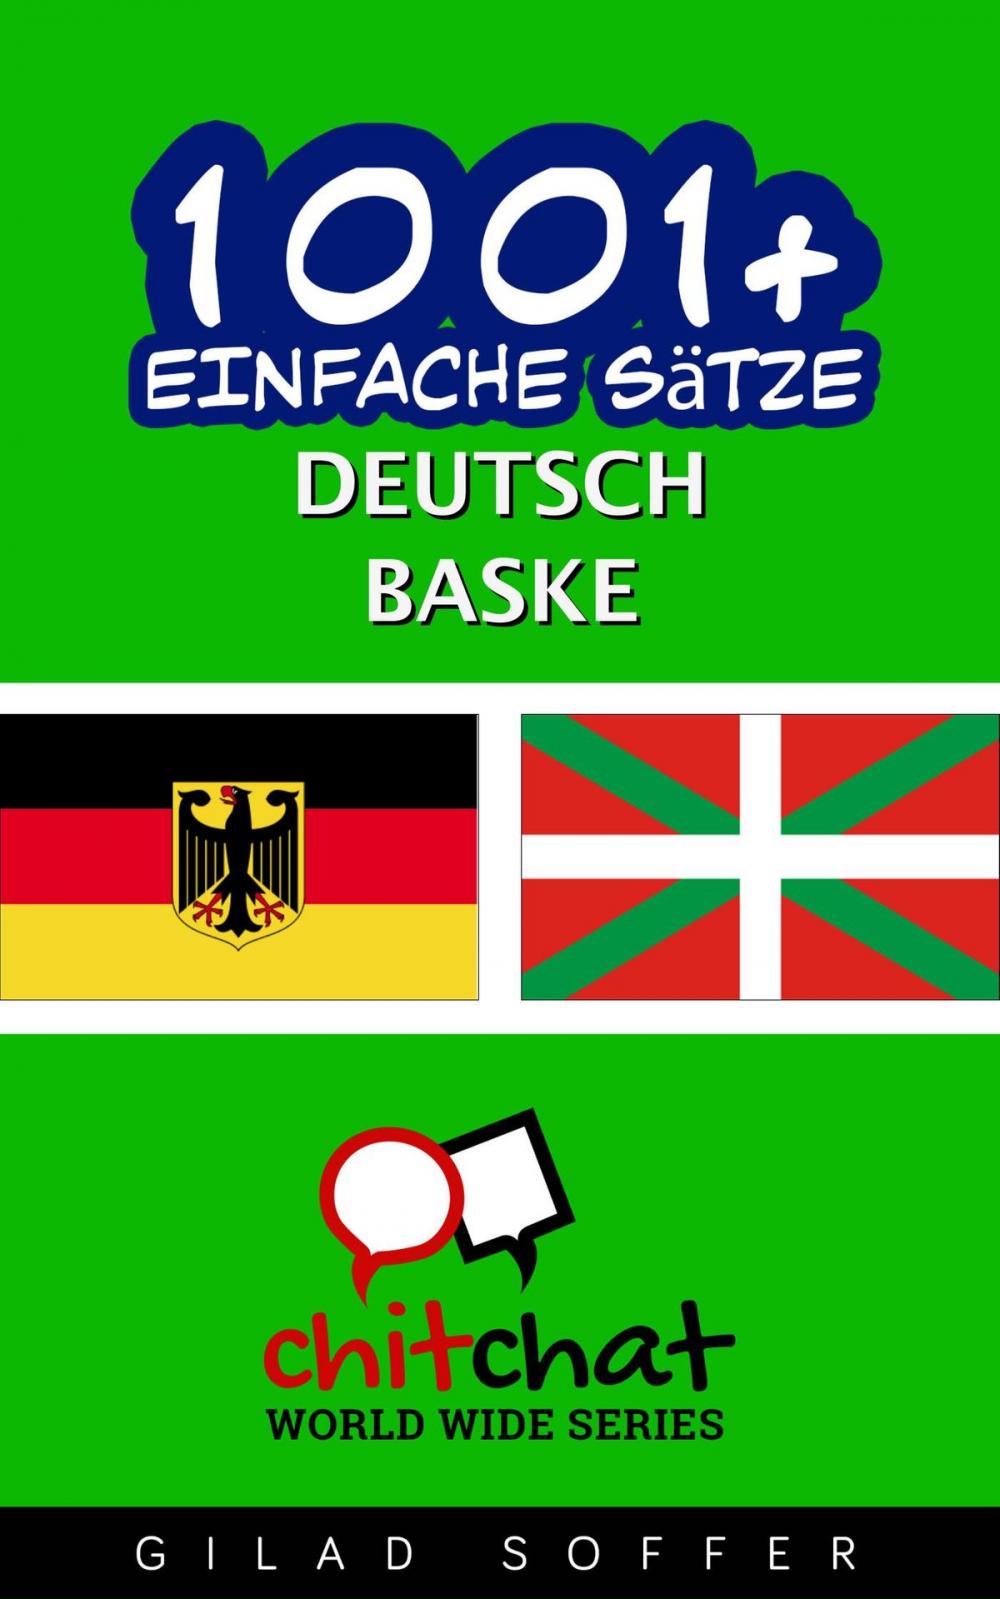 Big bigCover of 1001+ Einfache Sätze Deutsch - Baske